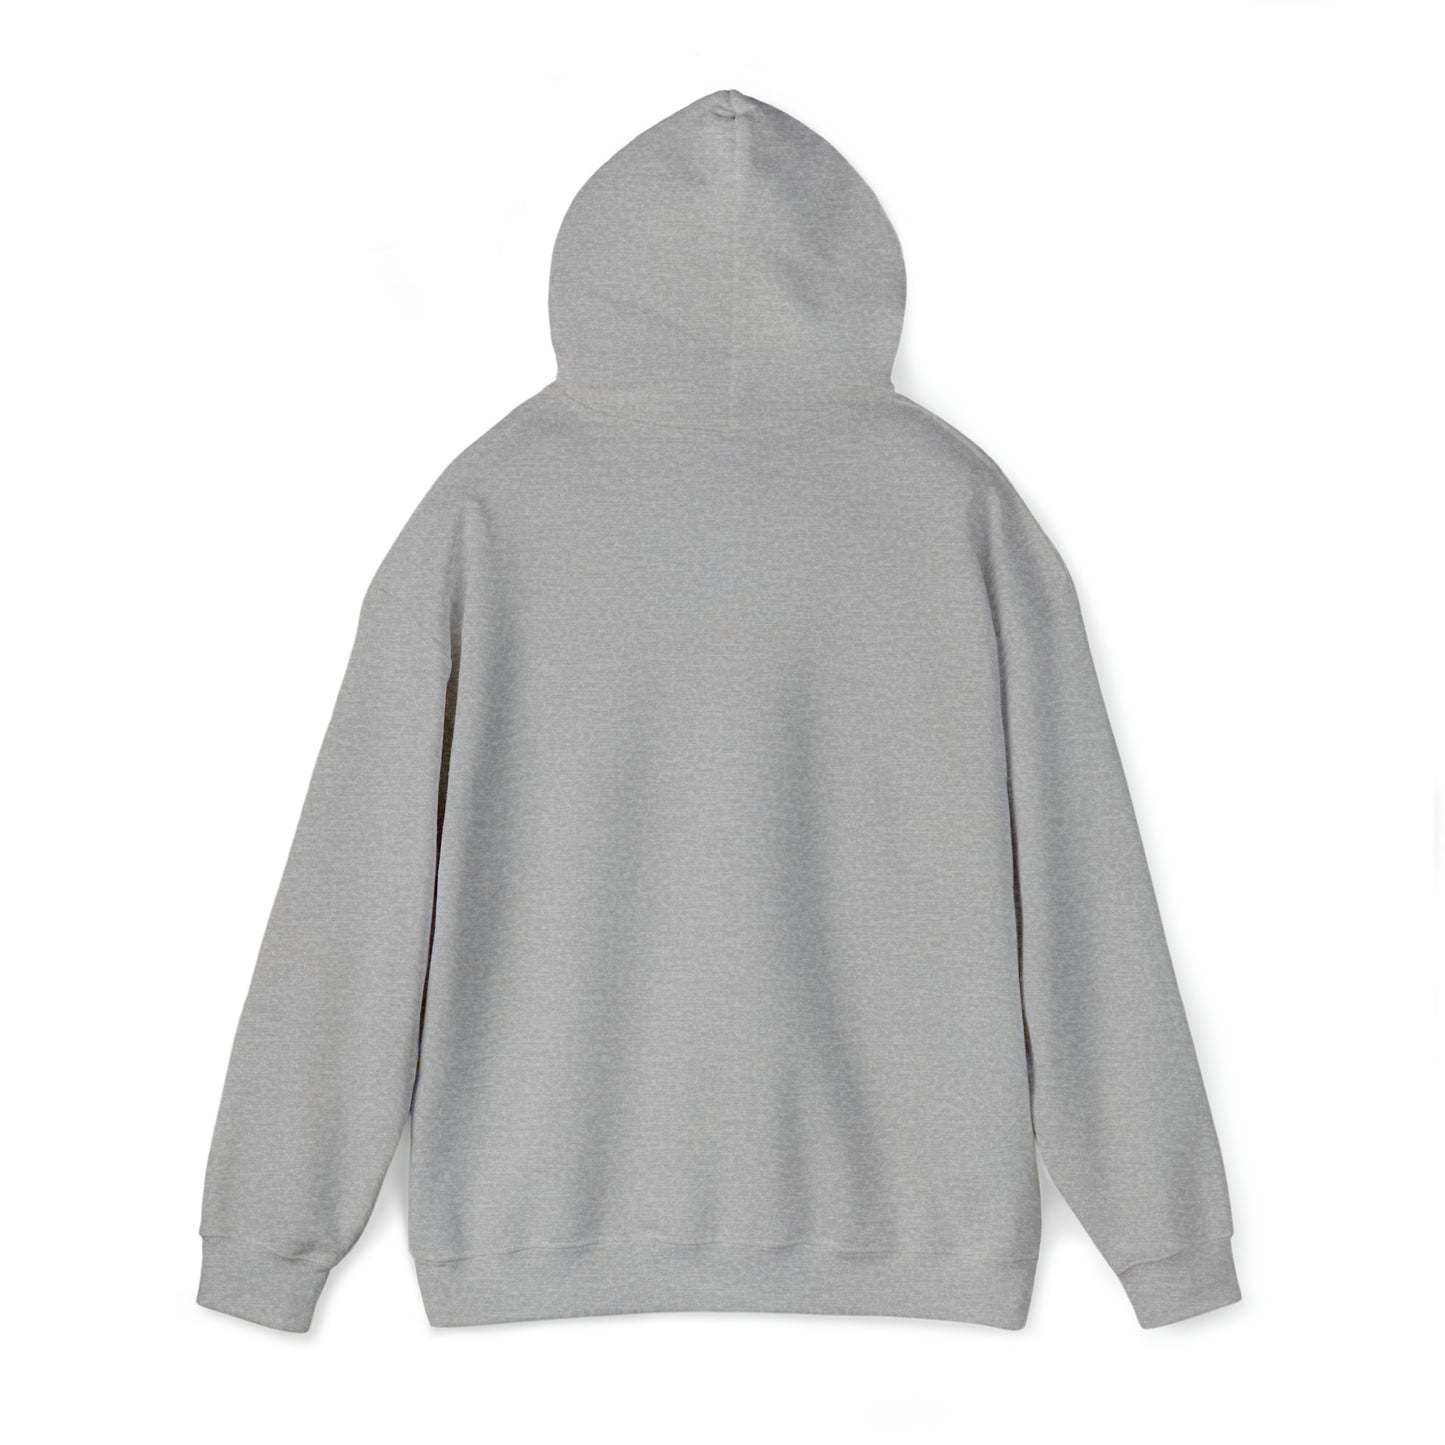 LOVED BY A KOOIKER Unisex Heavy Blend™ Hooded Sweatshirt